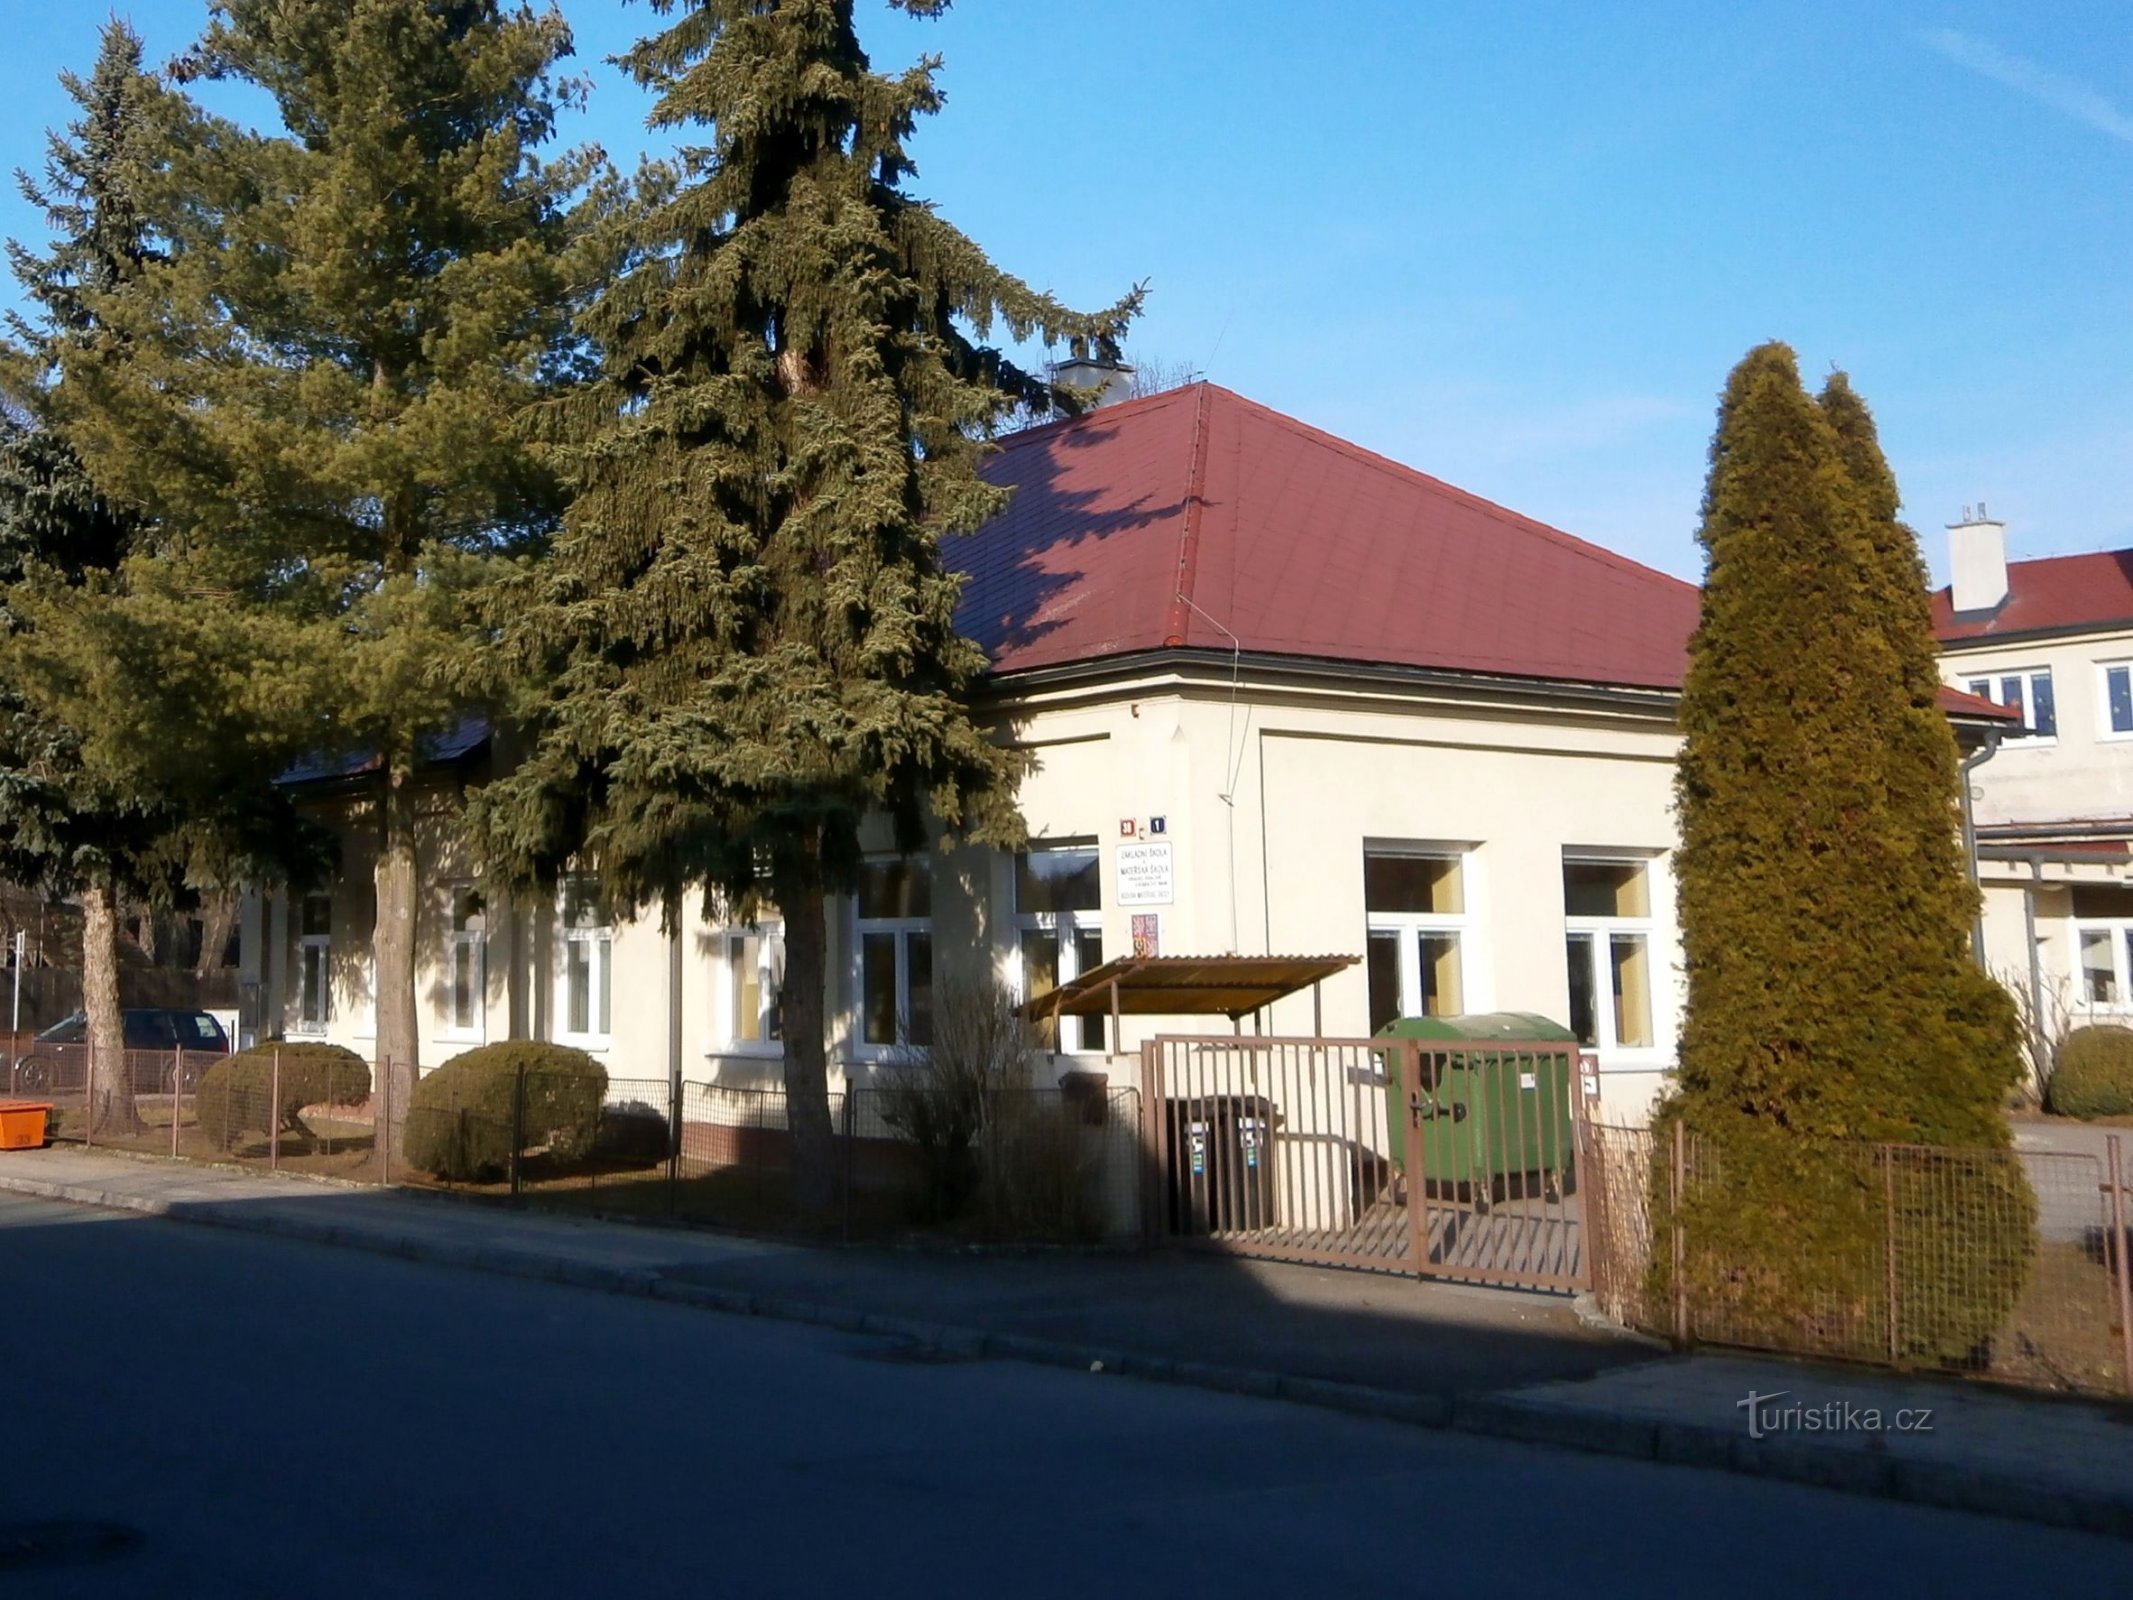 Σχολείο στο Březhrad (Hradec Králové, 4.3.2017/XNUMX/XNUMX)